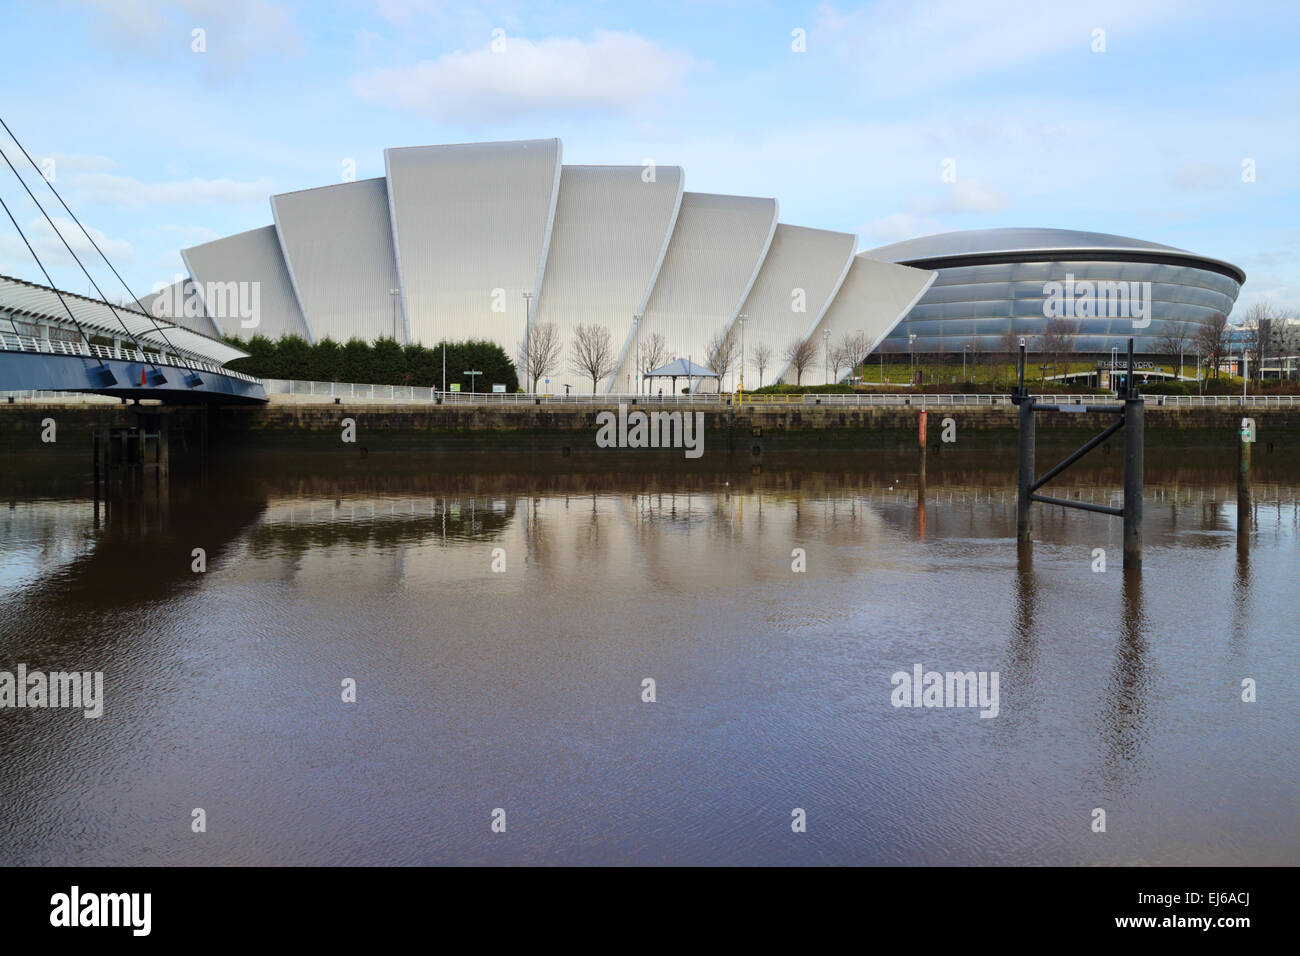 Clyde Auditorium e sse idro arena con il fiume Clyde al secc Scottish Exhibition and Conference Centre Glasgow Scotland Regno Unito Foto Stock